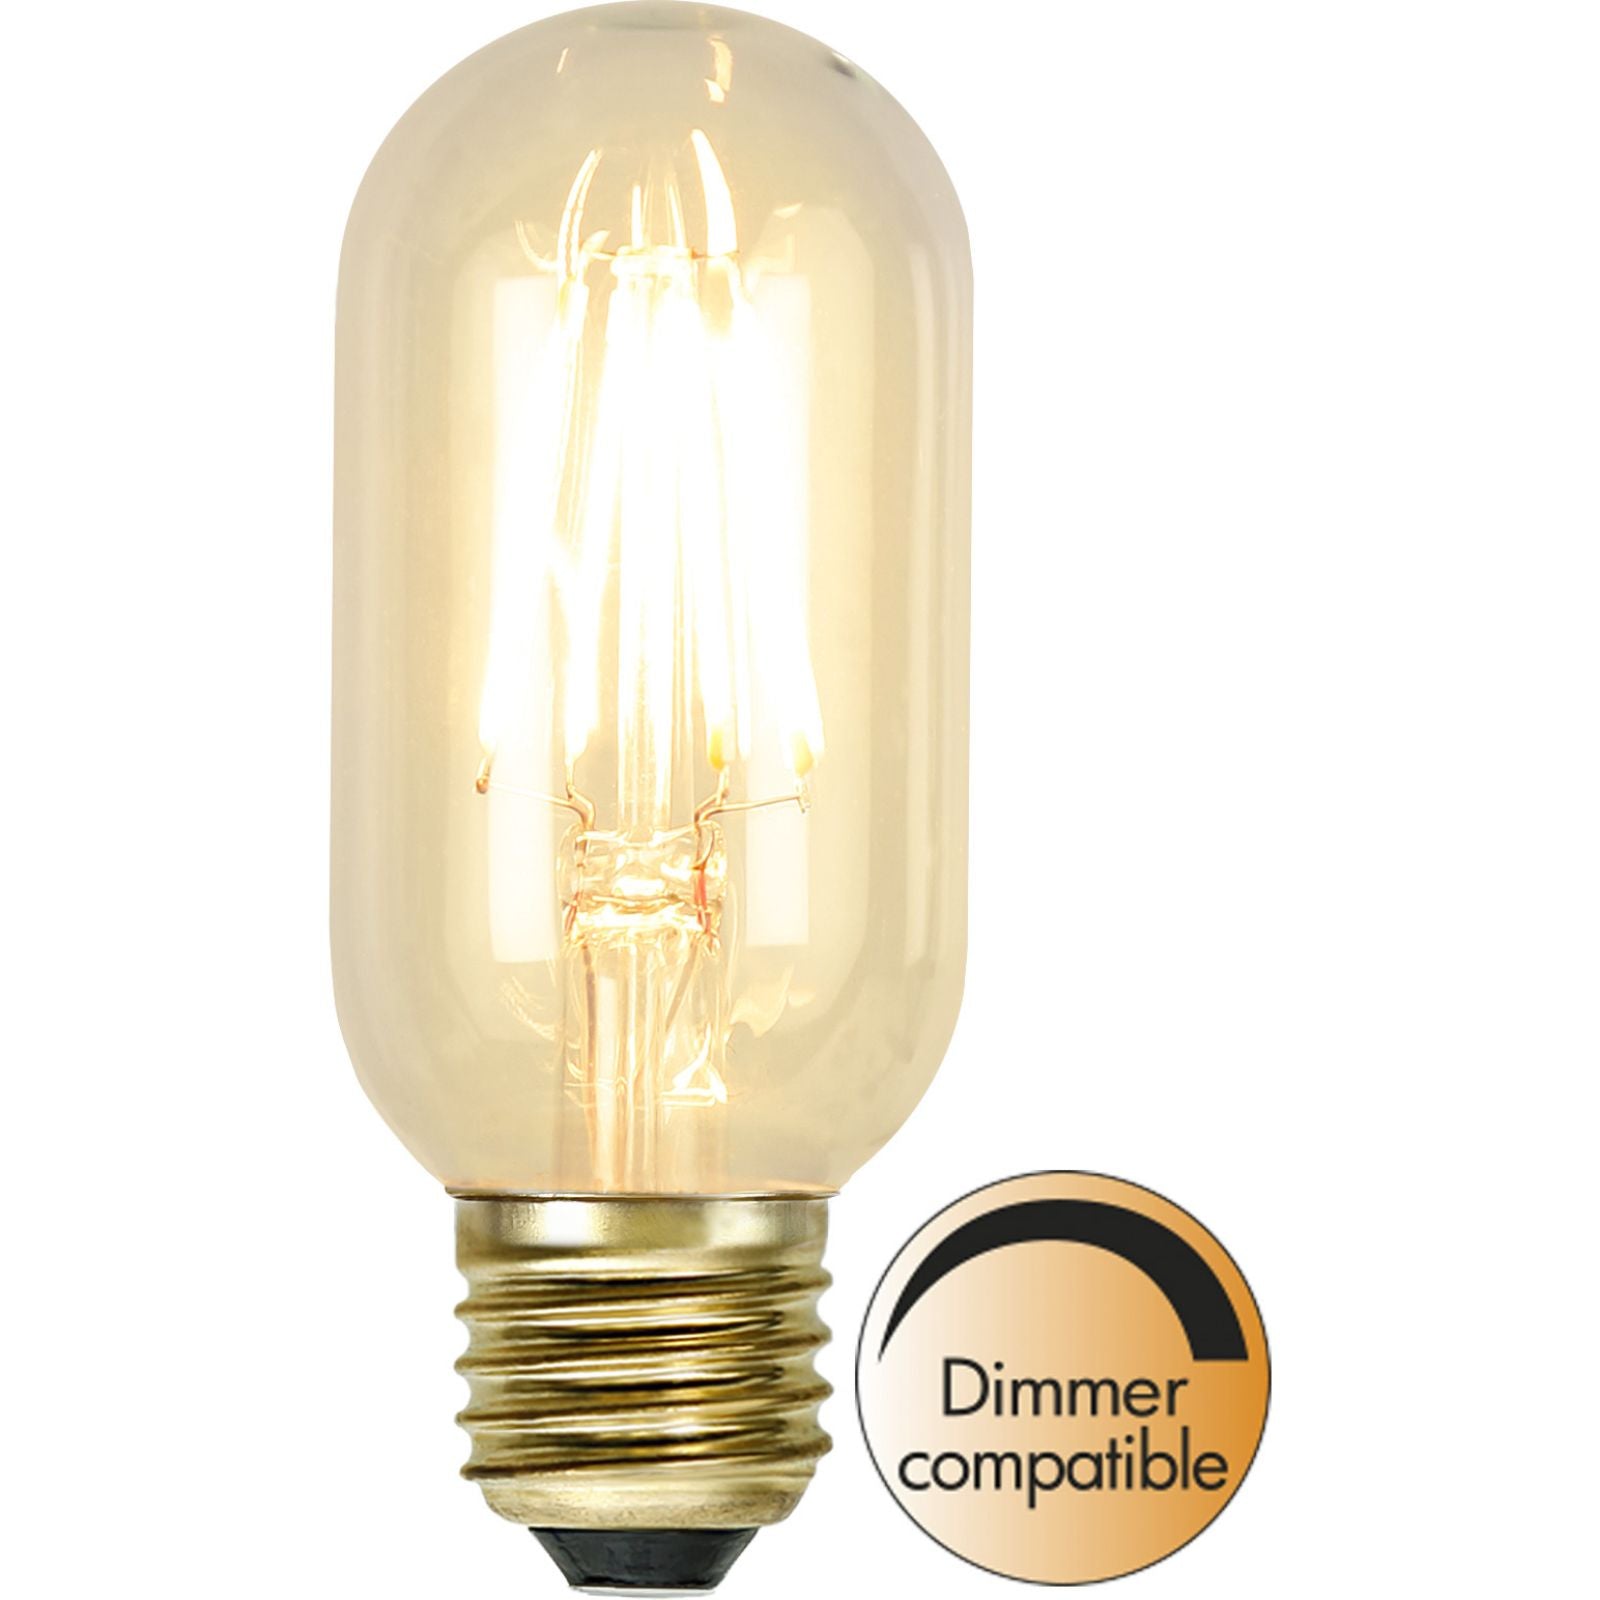 led-lampa-e27-t45-soft-glow-352-64-1